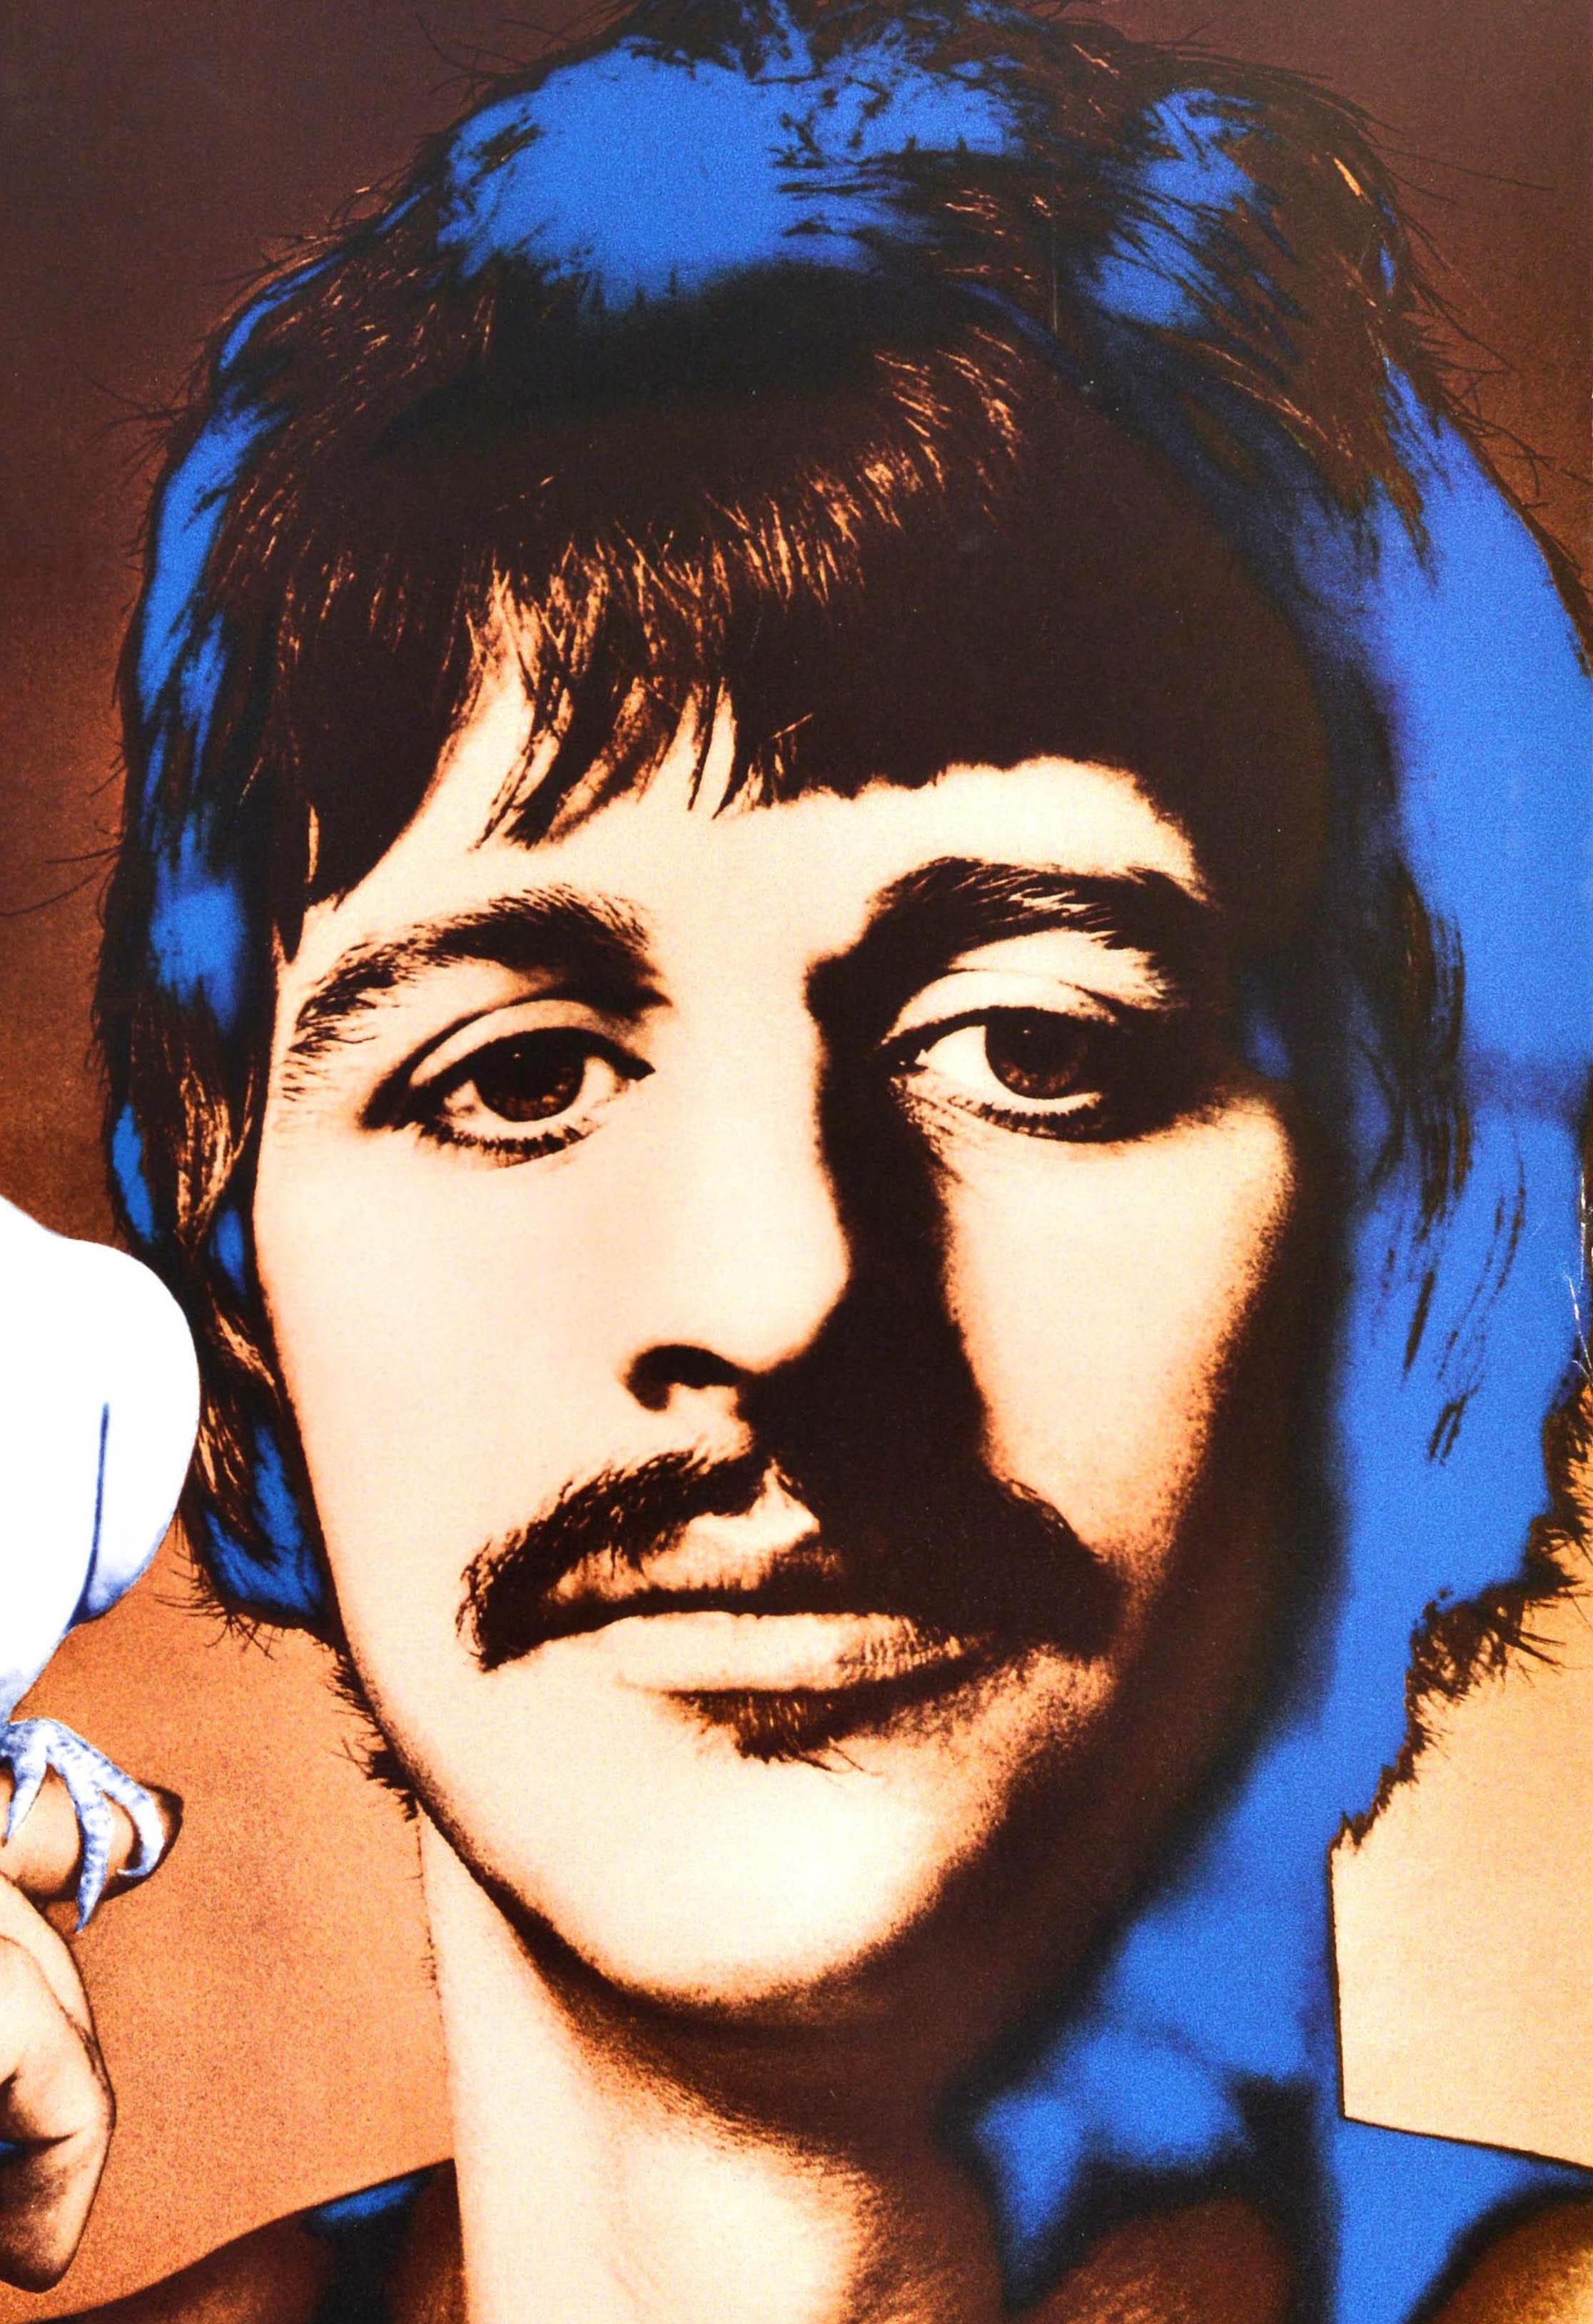 Original Vintage-Werbeplakat mit einem farbenfrohen und psychedelischen Fotodesign des amerikanischen Fotografen Richard Avedon (1923-2004), das den Beatles-Musiker und Singer-Songwriter Ringo Starr (Richard Starkey; geb. 1940) zeigt, der eine weiße